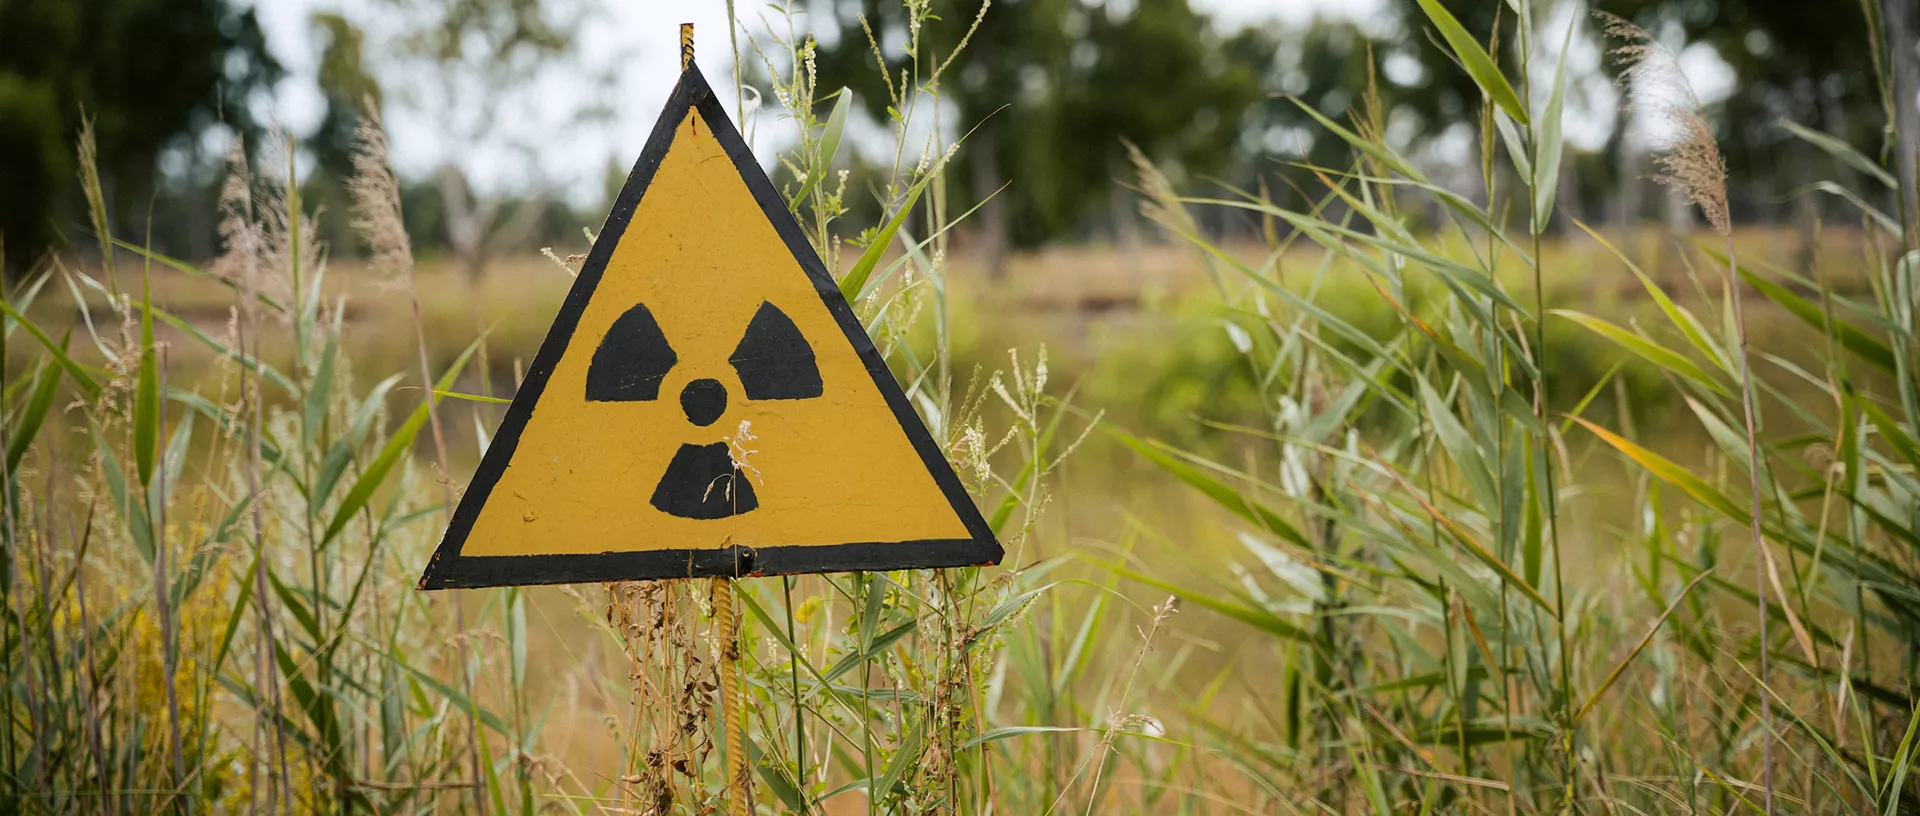 Bild eines radioaktiven Warnzeichens vor einer Waldlandschaft. 